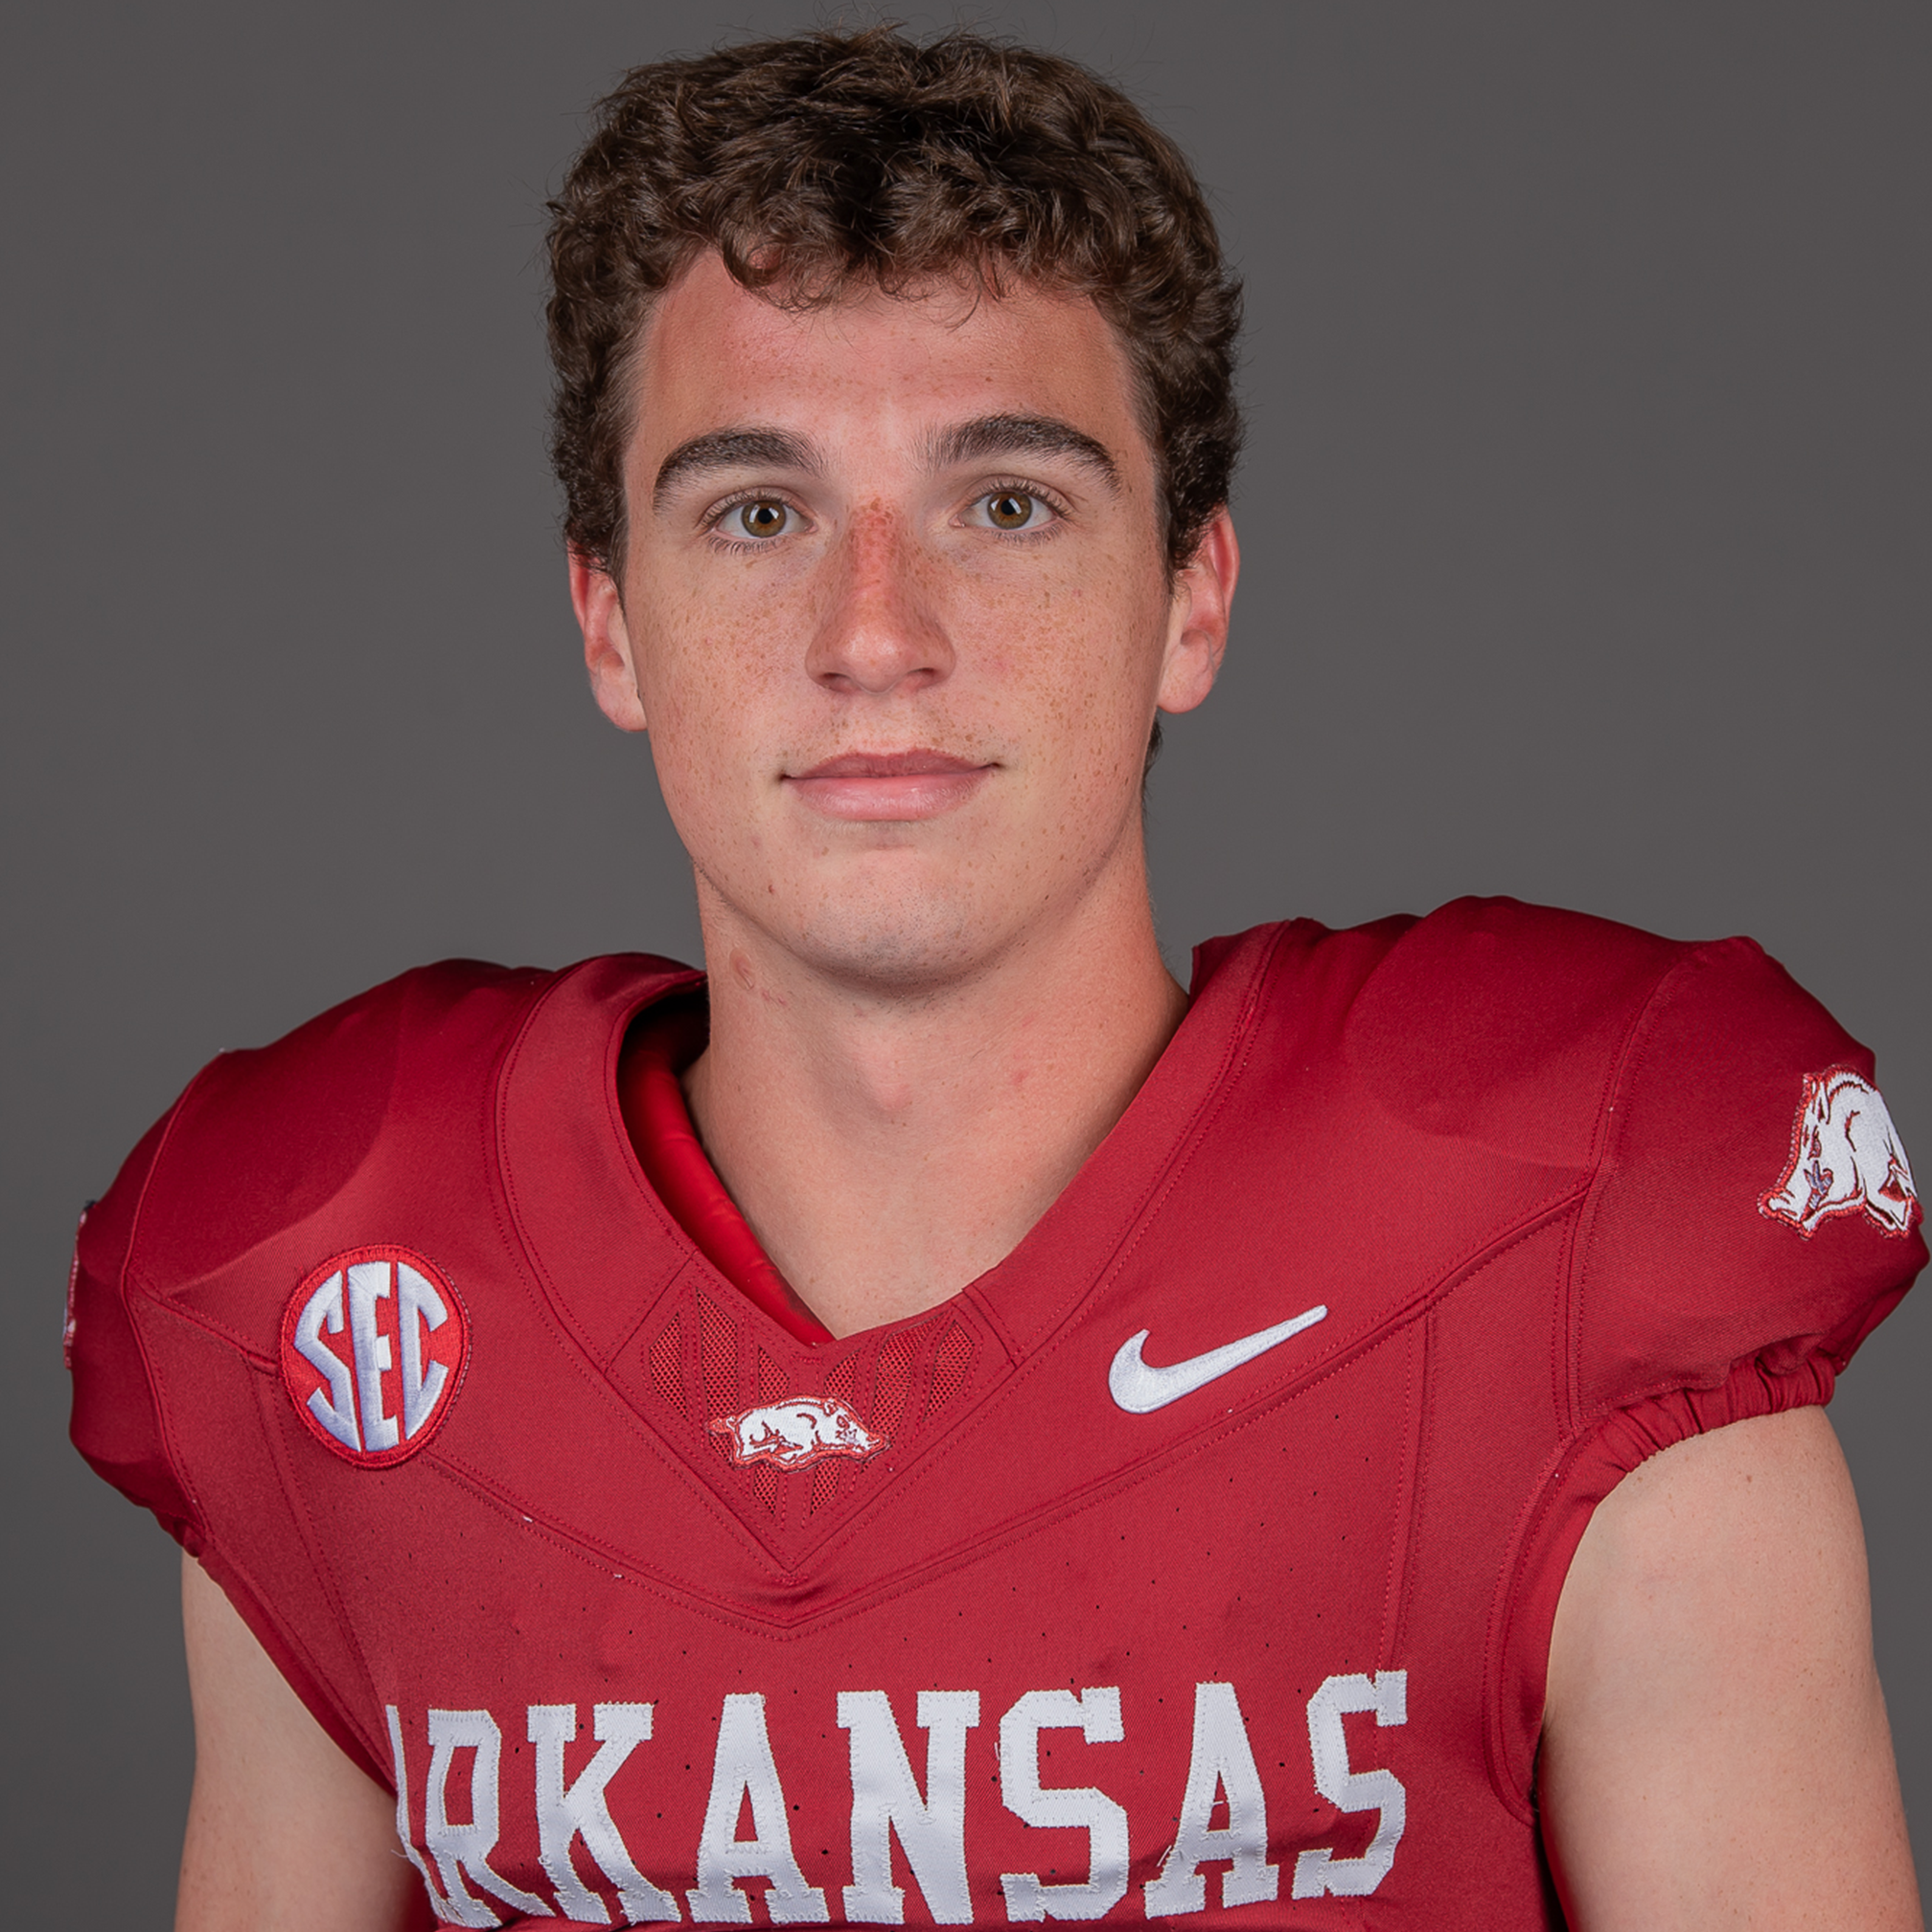 Walker Catsavis - Football - Arkansas Razorbacks